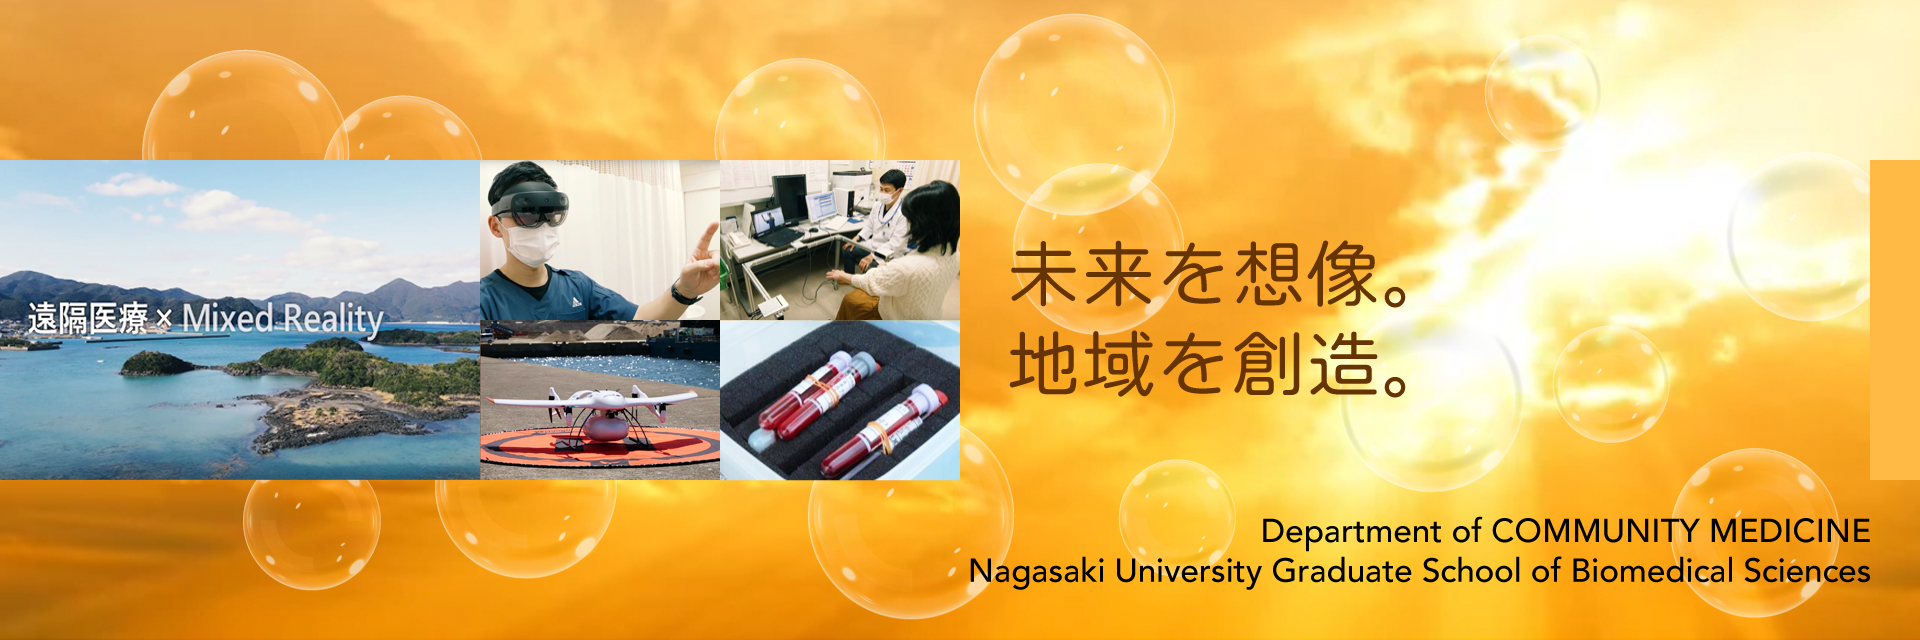 未来を想像。地域を創造。：Department of Community Medicine, Nagasaki University Graduate School of Biomedical Sciences